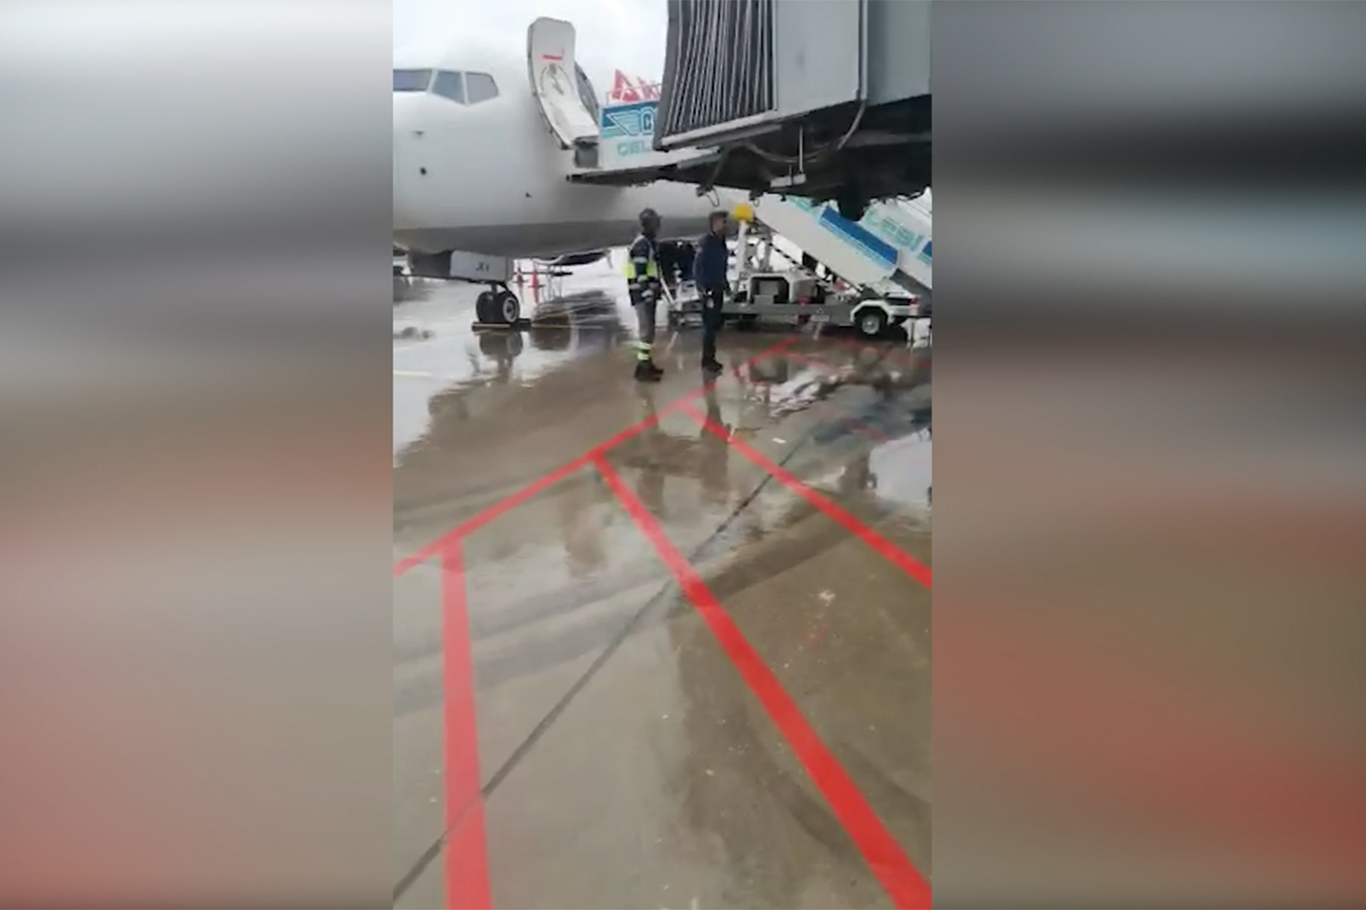 Ankara-Diyarbakır seferini yapan uçağın körüğü çalışmayınca yolcular mağdur oldu